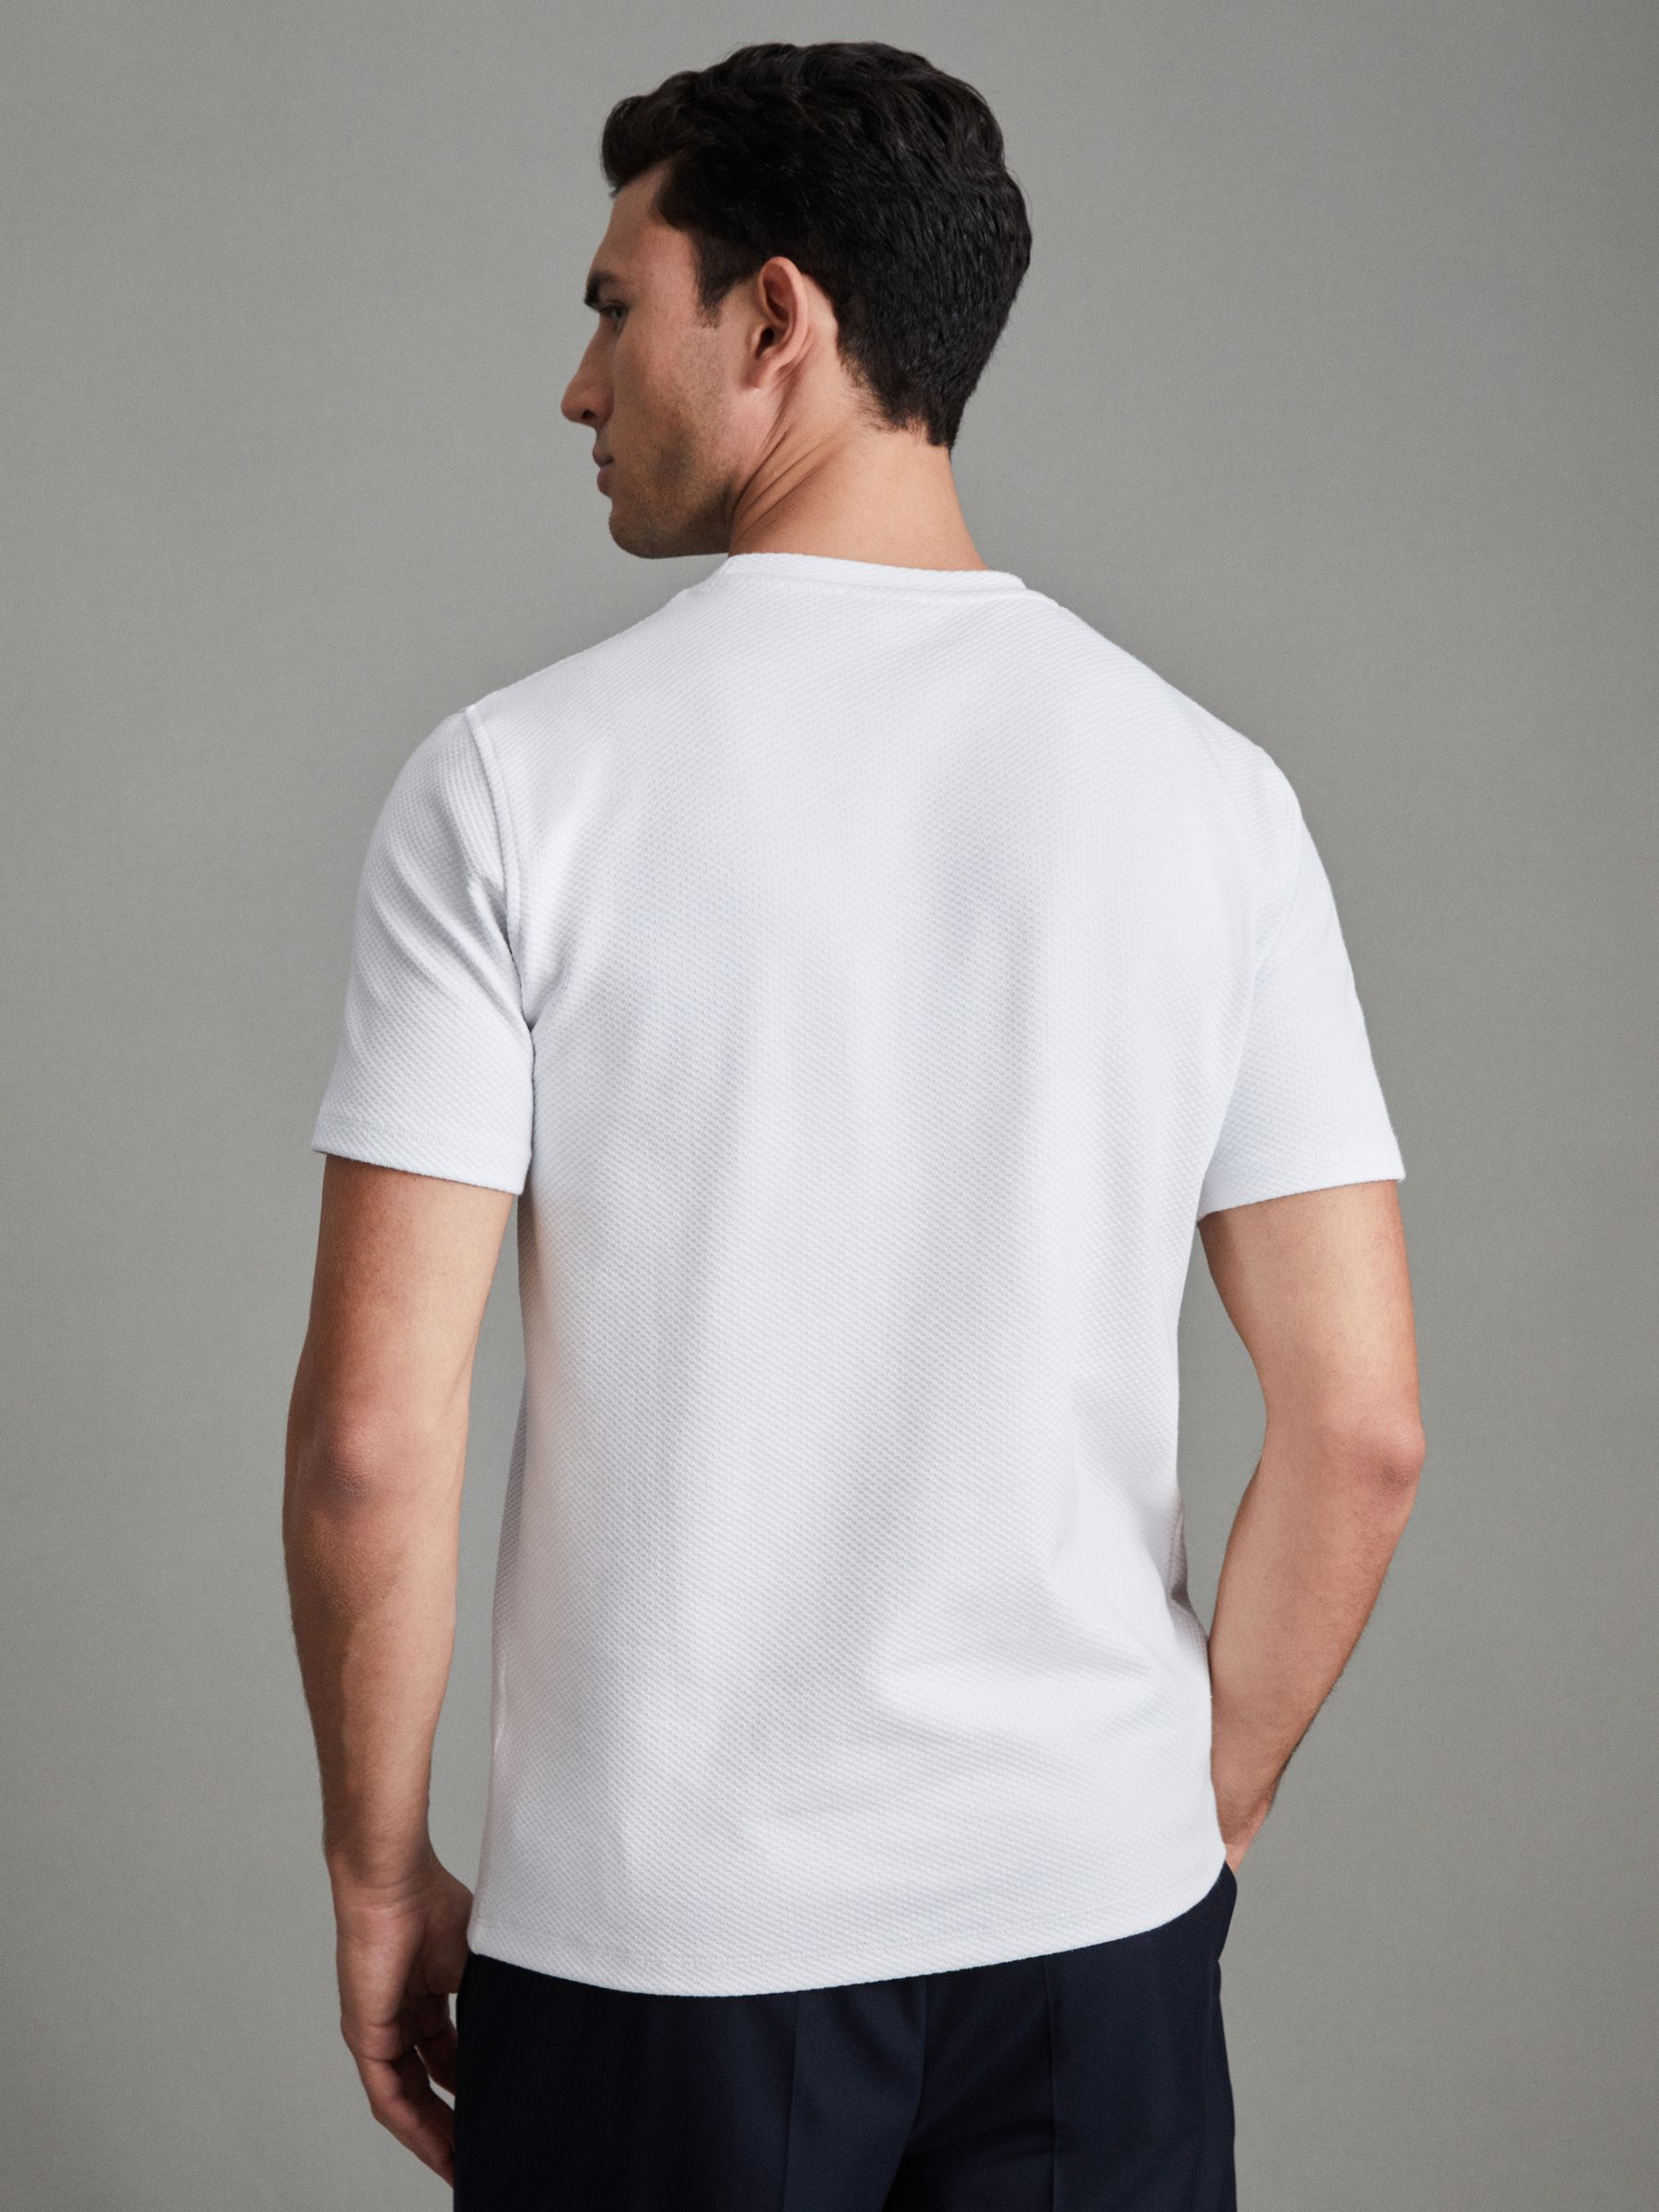 Reiss Cooper Textured Cotton Blend Crew Neck T-Shirt - REISS